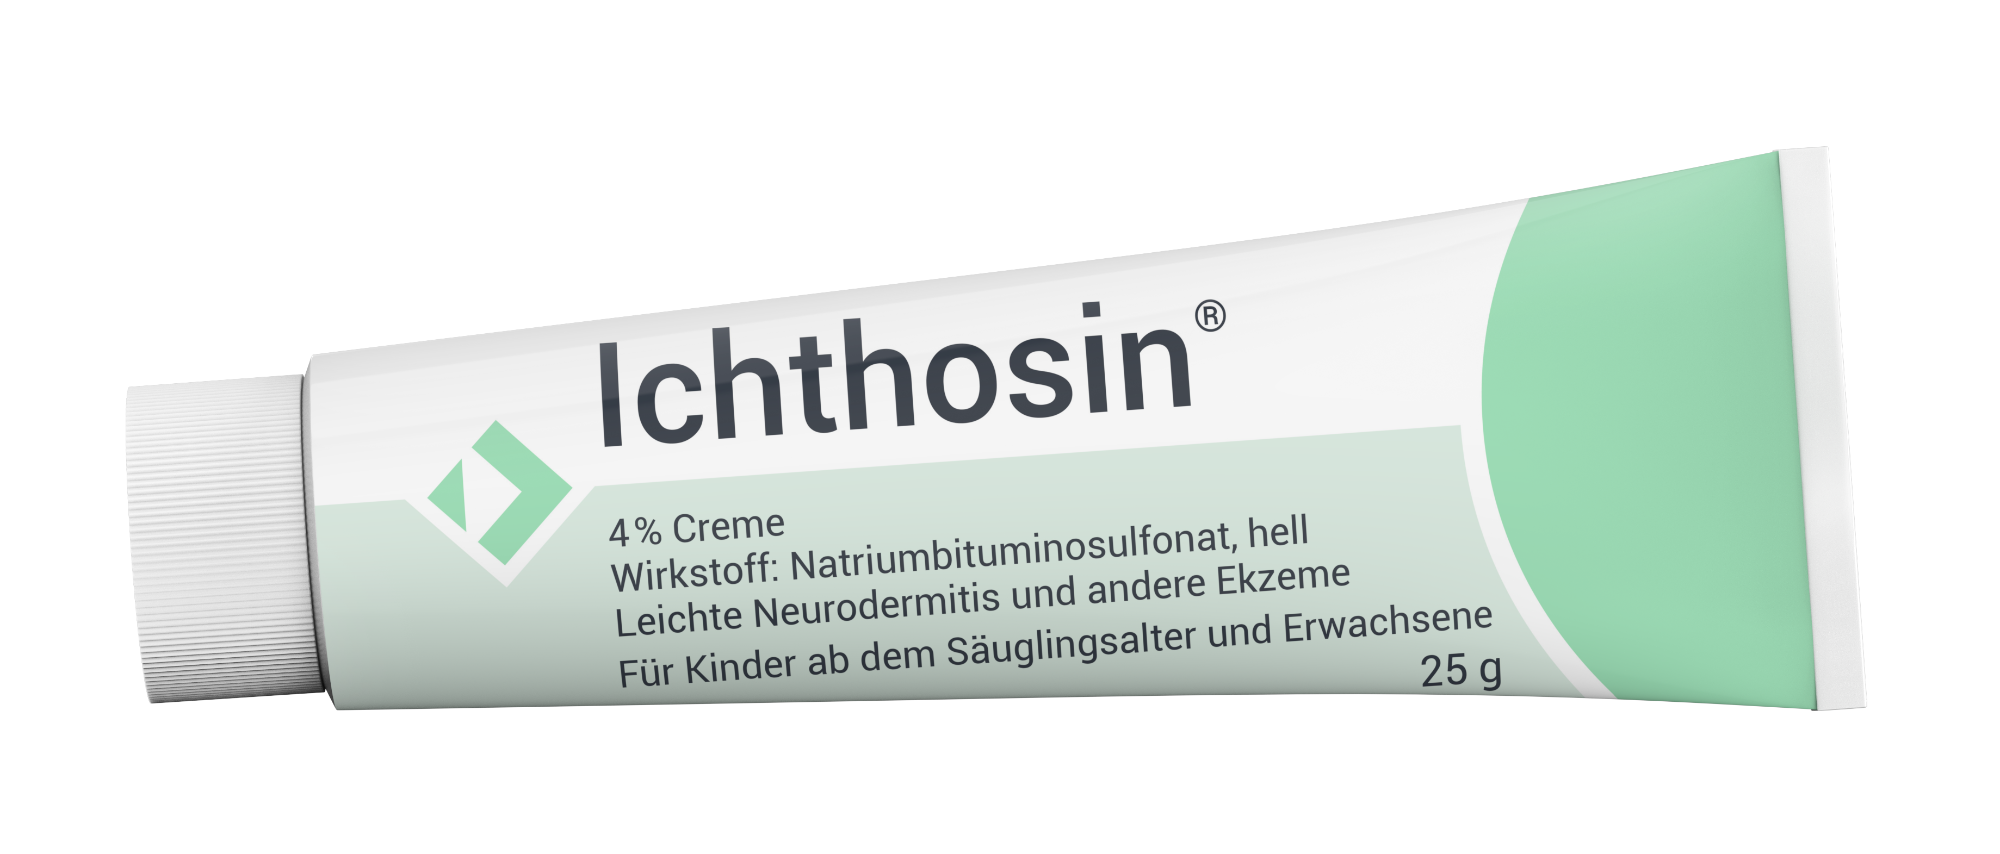 Tube Ichthosin25g